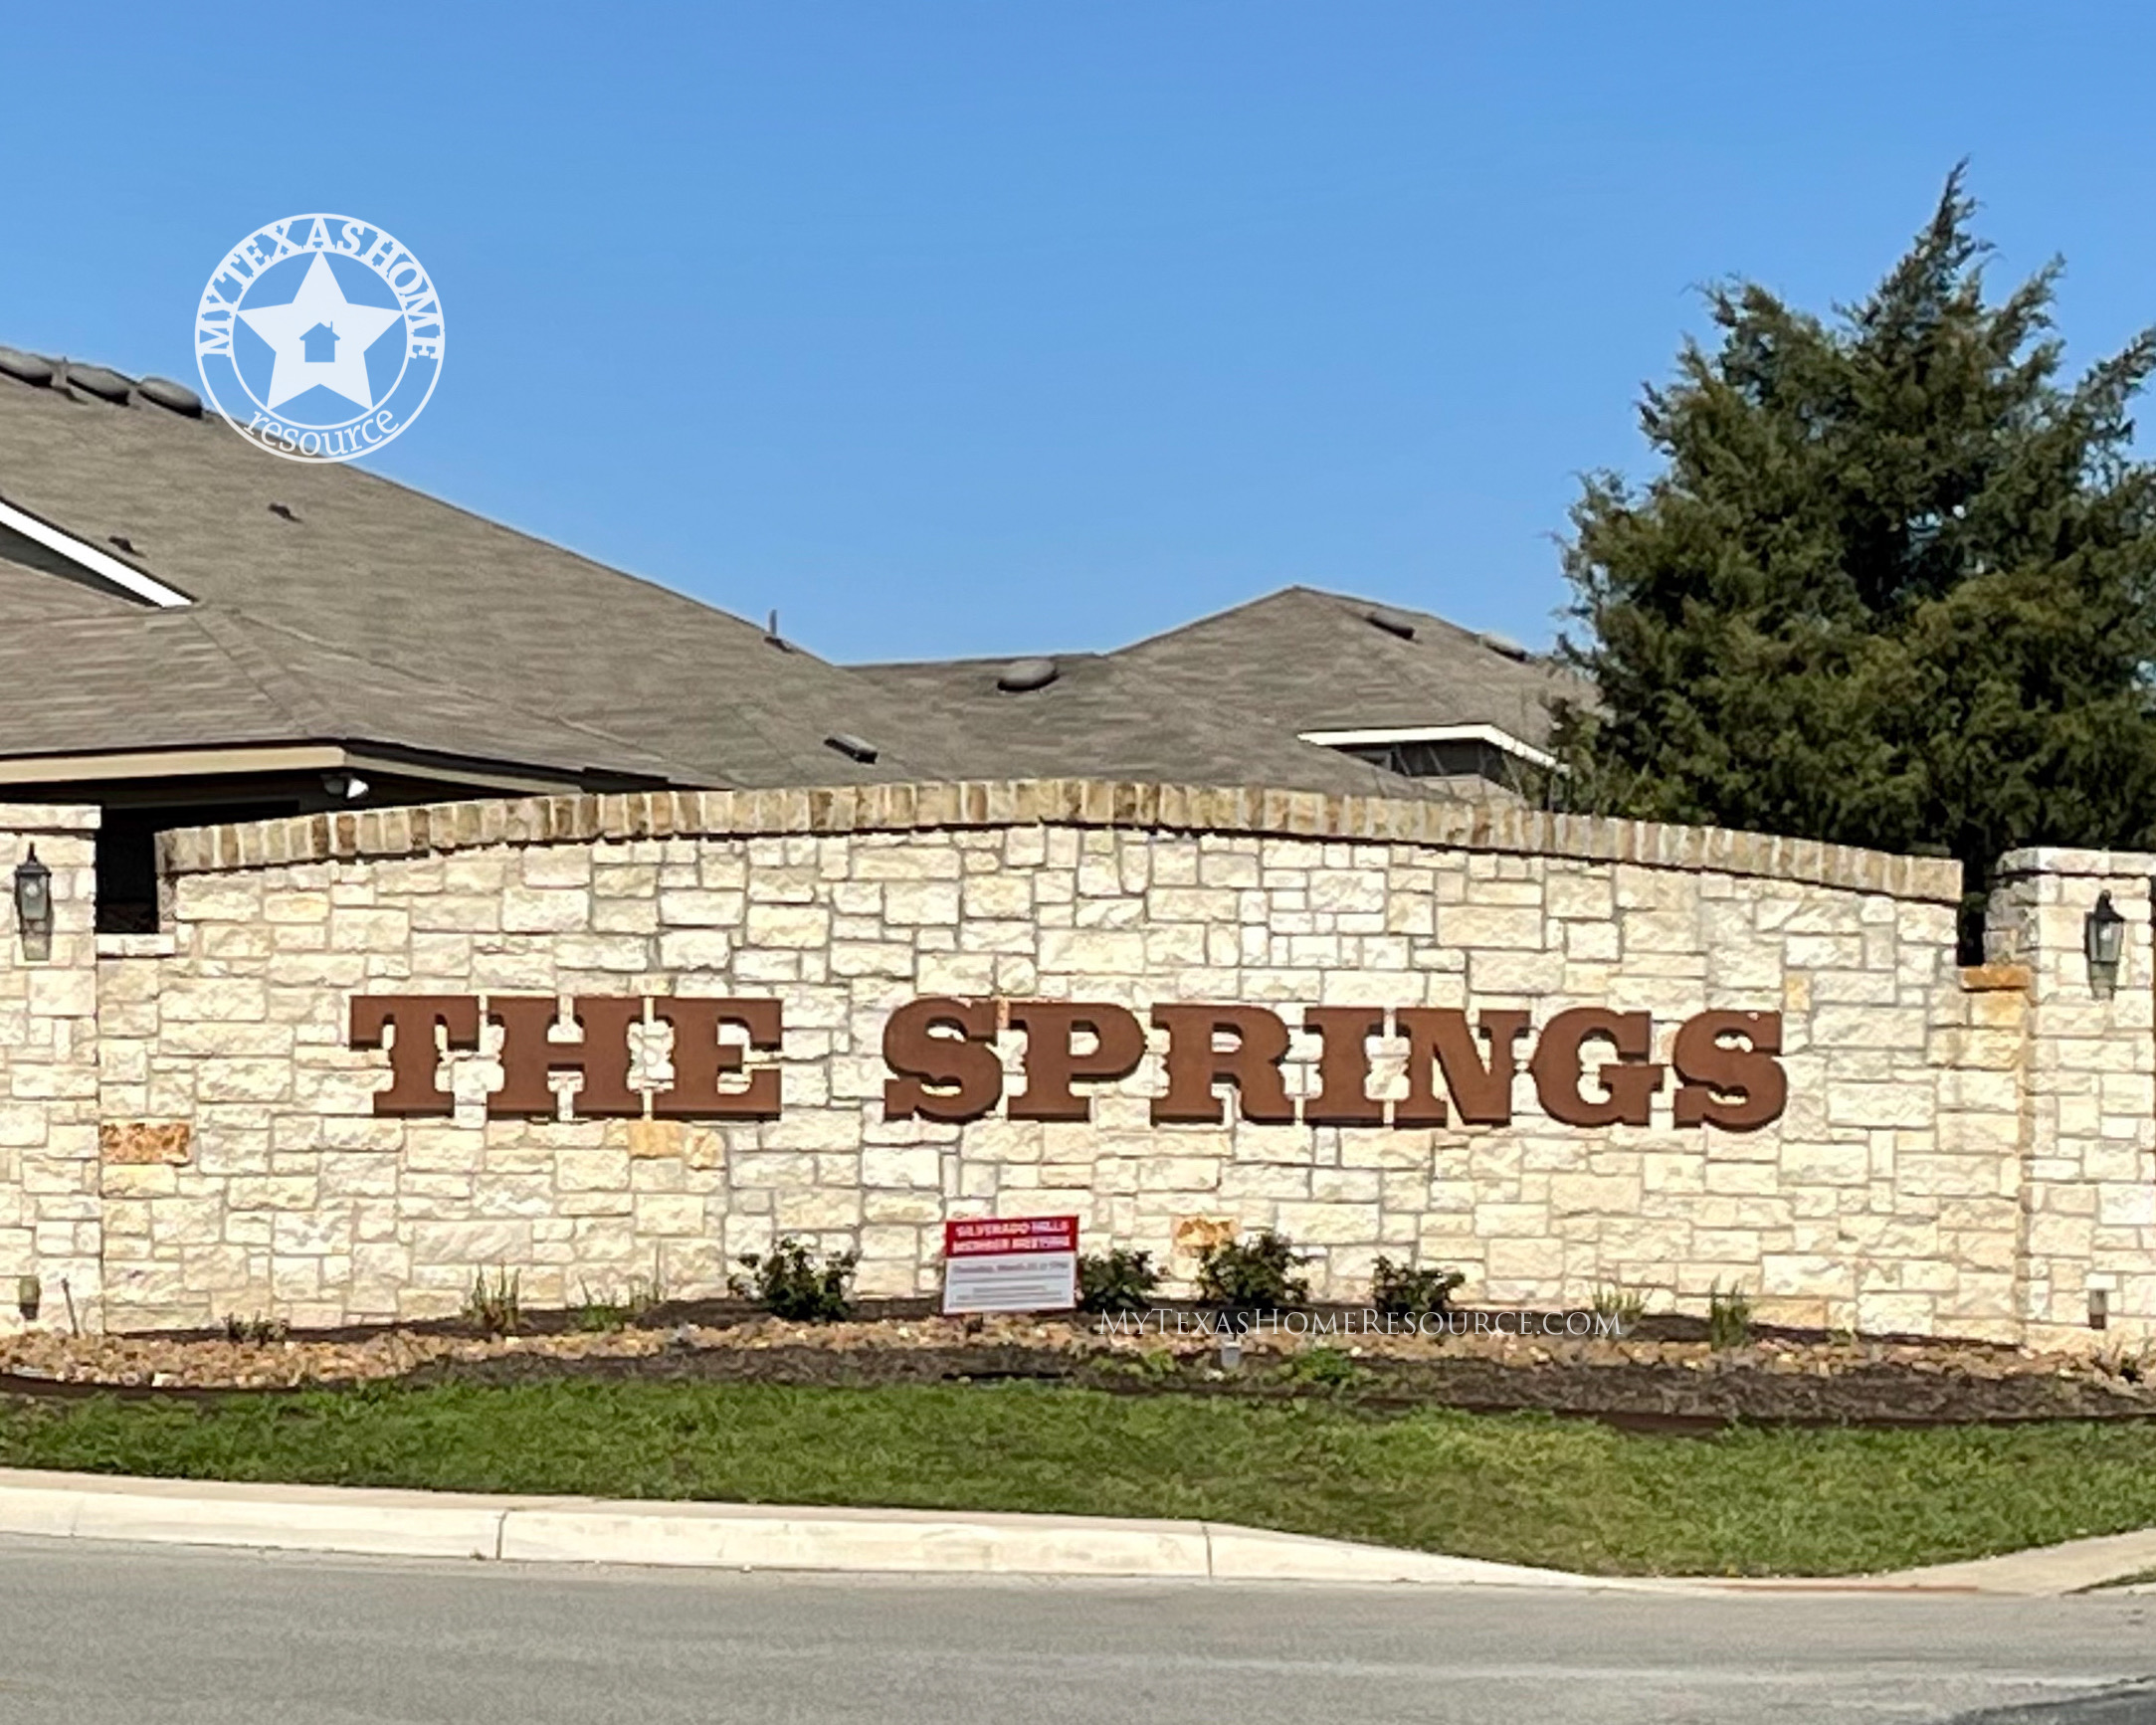 西尔维拉多山 Springs社区网上正规的彩票网站，德克萨斯州